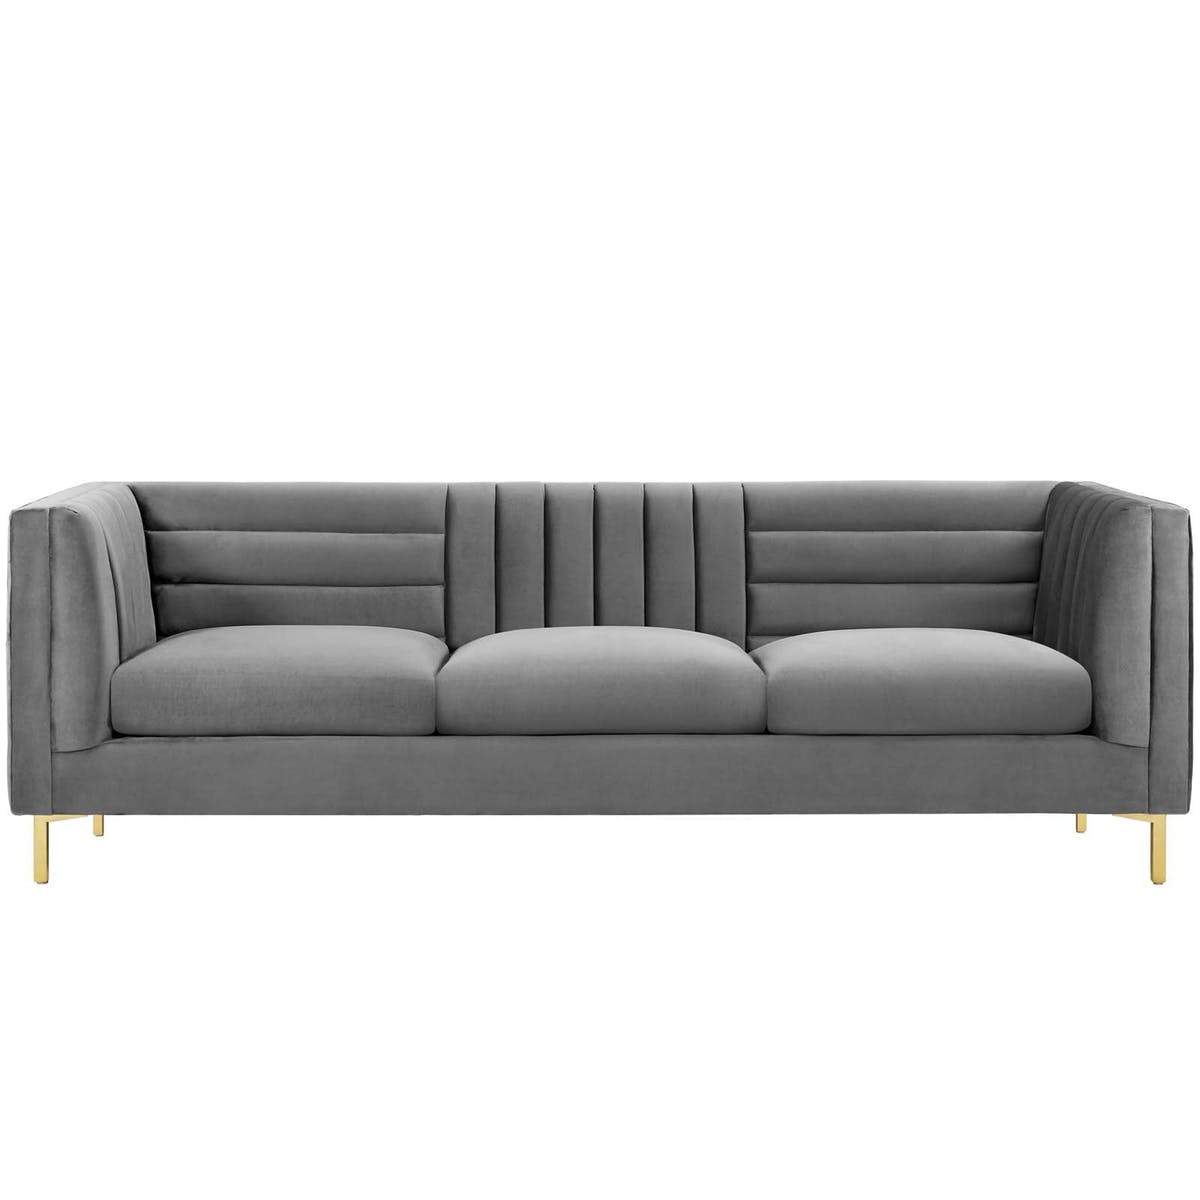 Ingenuity Tufted Performance Velvet Sofa - living-essentials